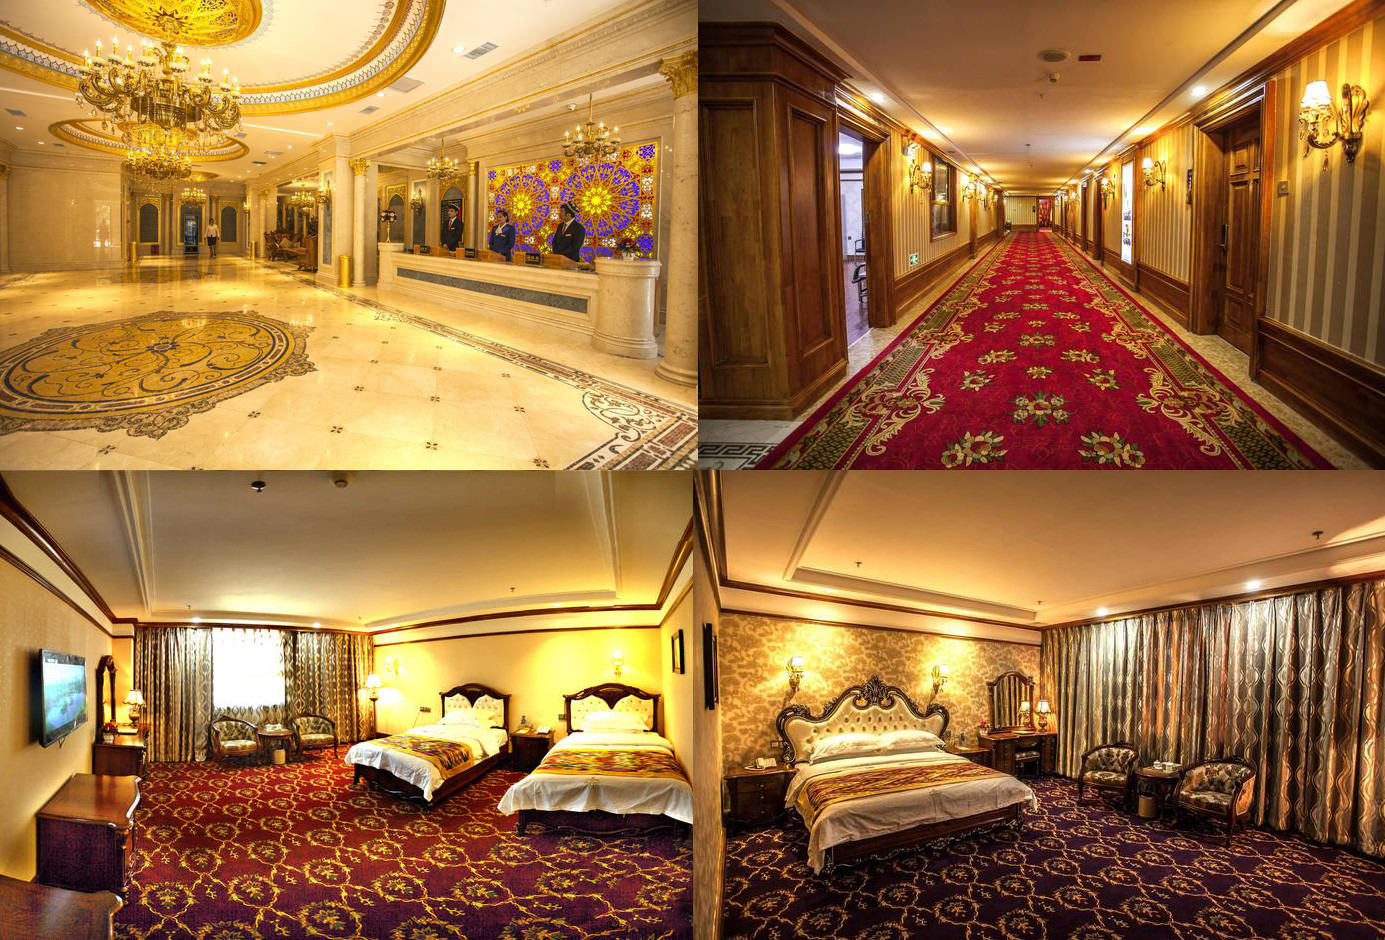 喀什天府星酒店图片